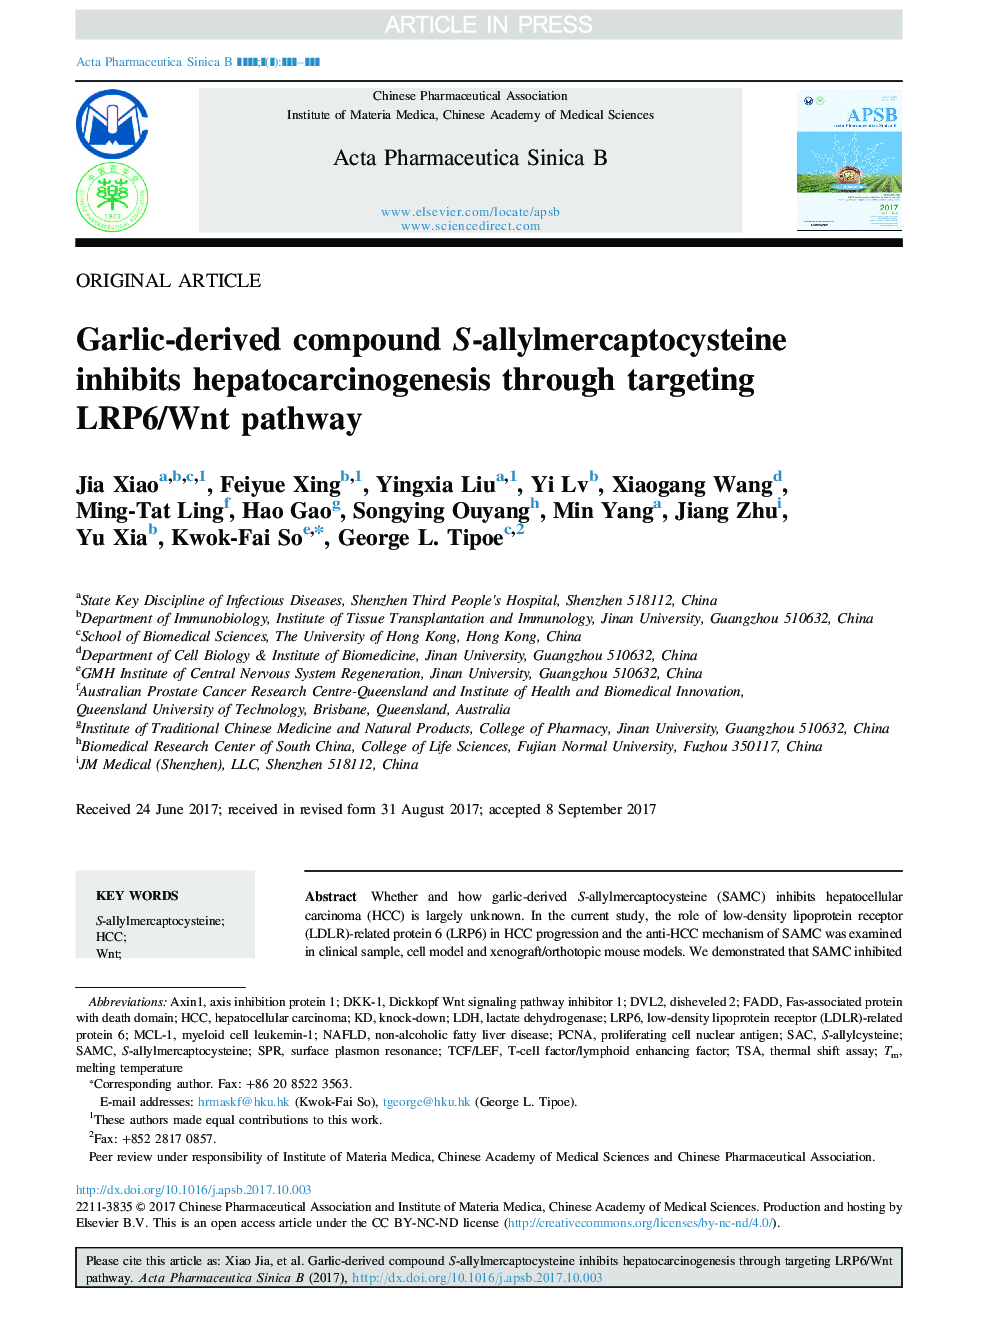 Garlic-derived compound S-allylmercaptocysteine inhibits hepatocarcinogenesis through targeting LRP6/Wnt pathway